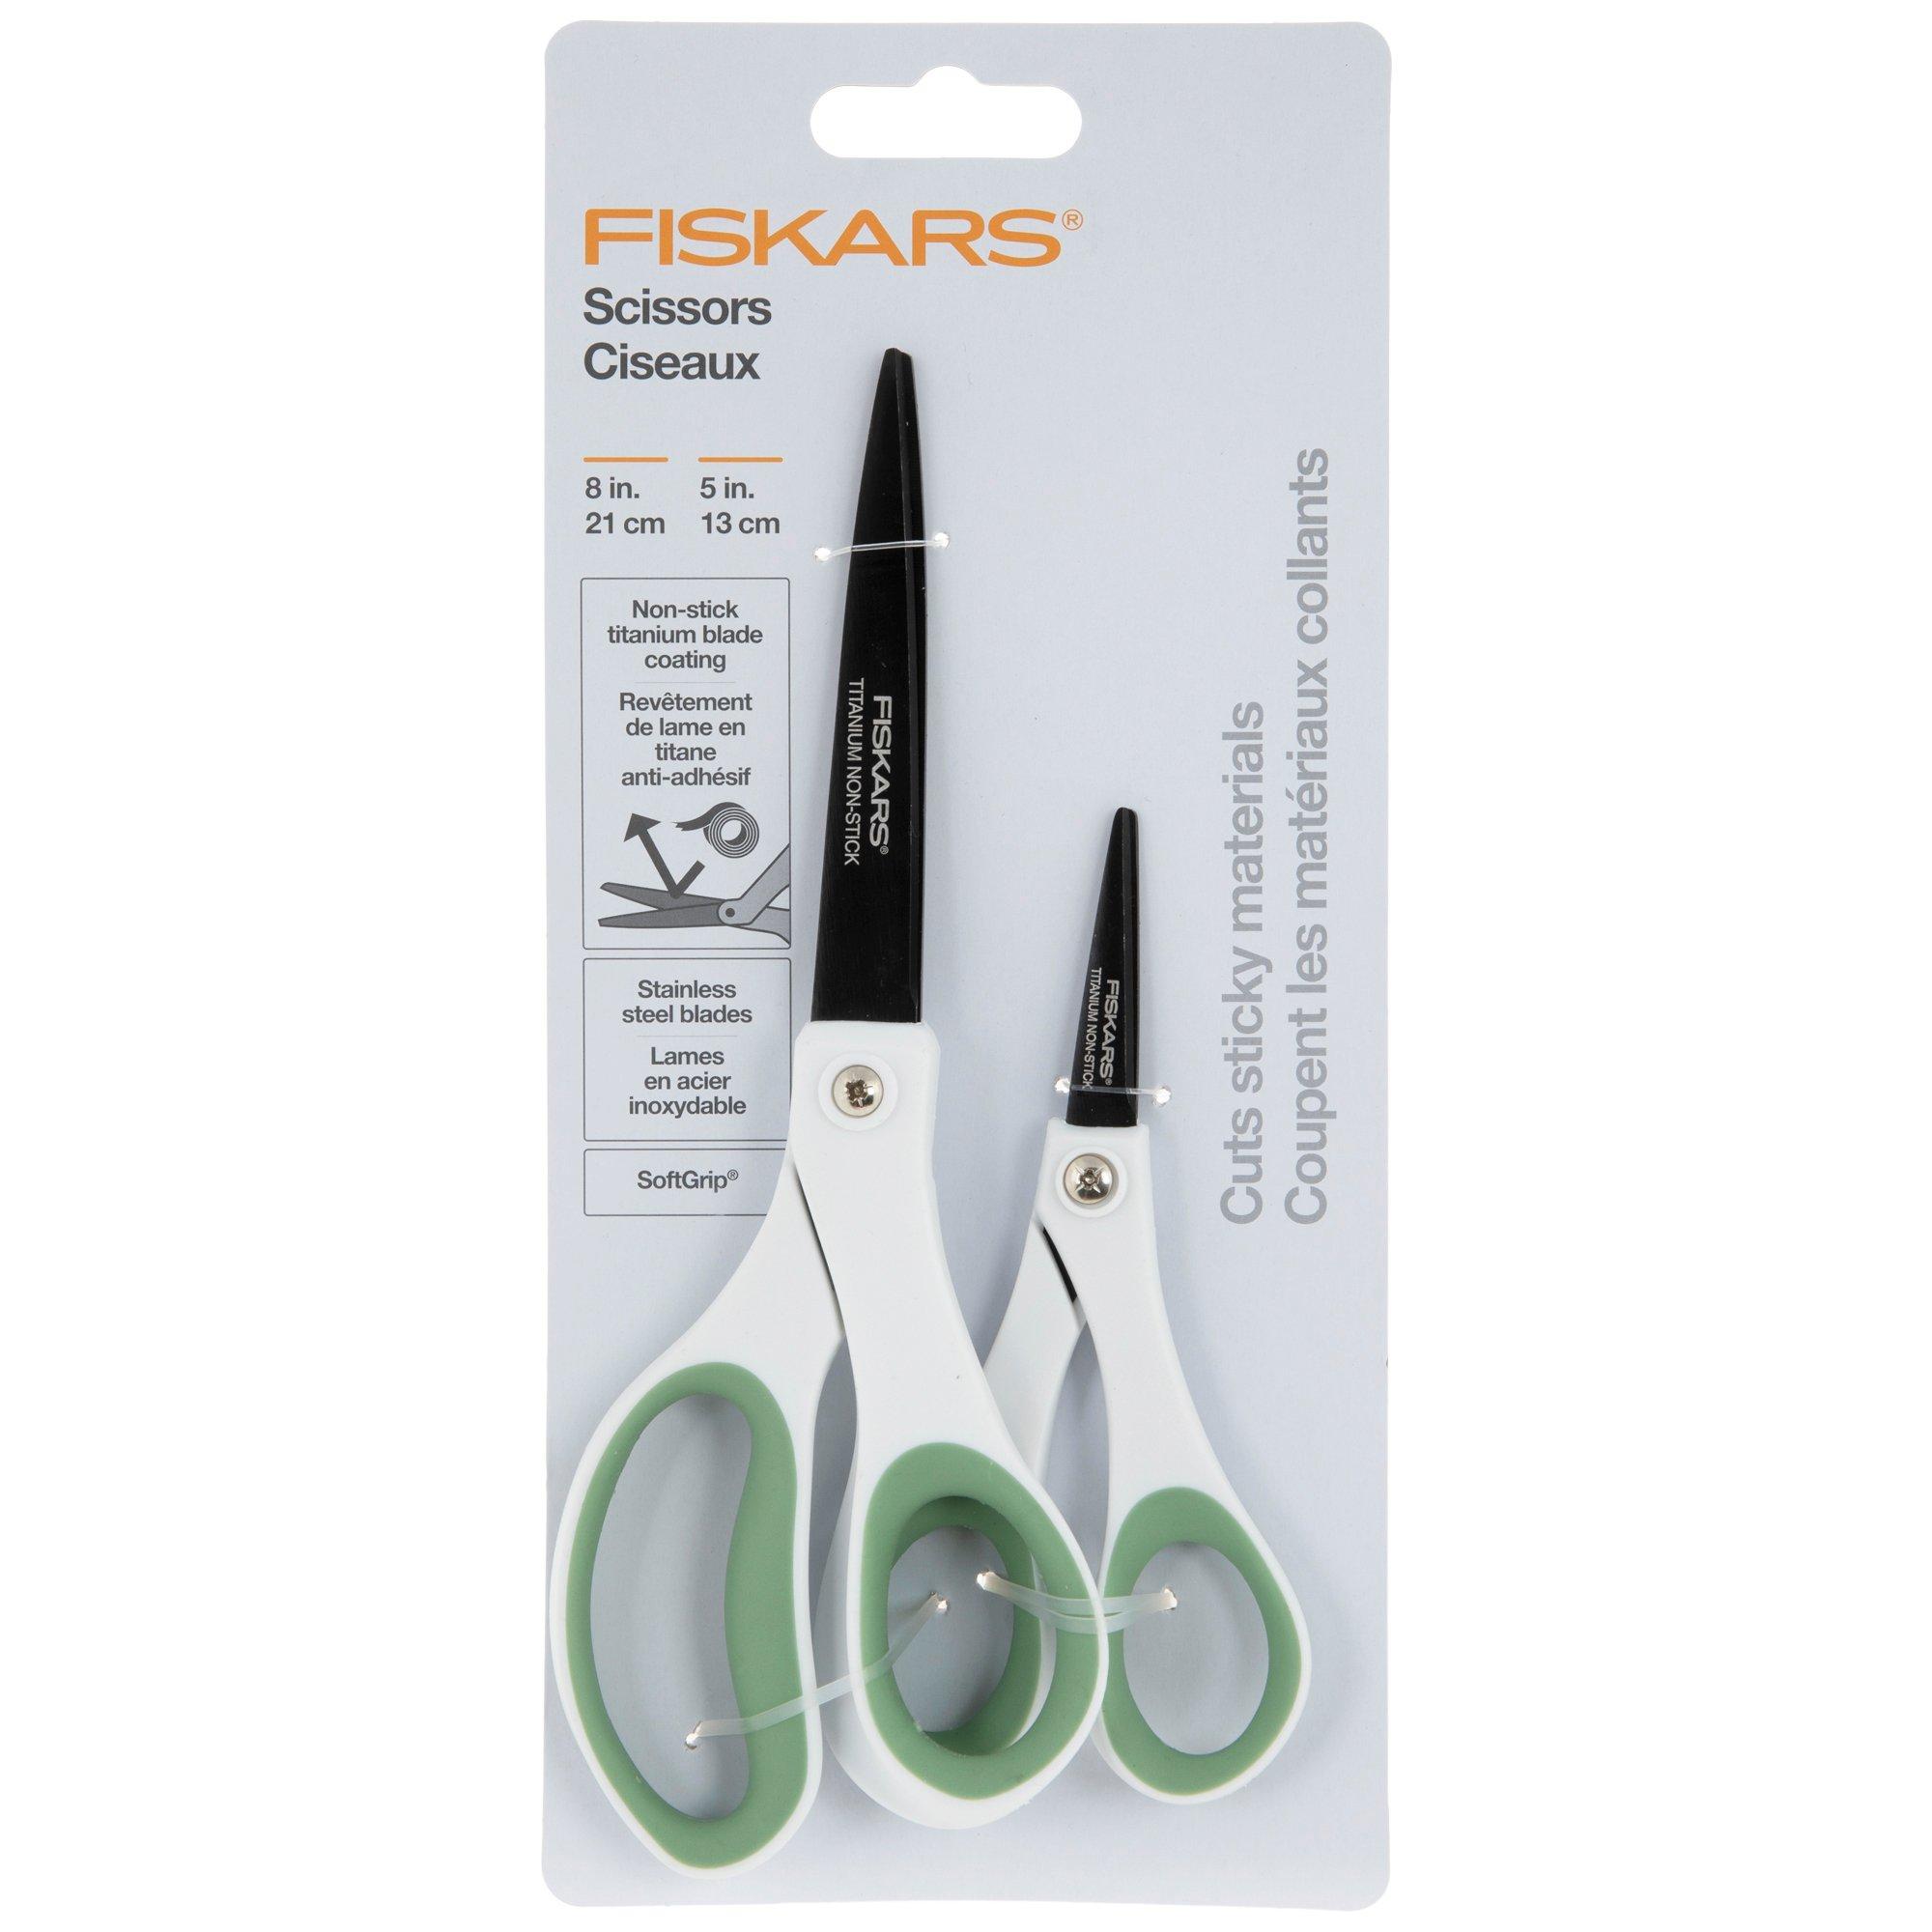 Fiskars Amplify Razor Edge Scissors, Hobby Lobby